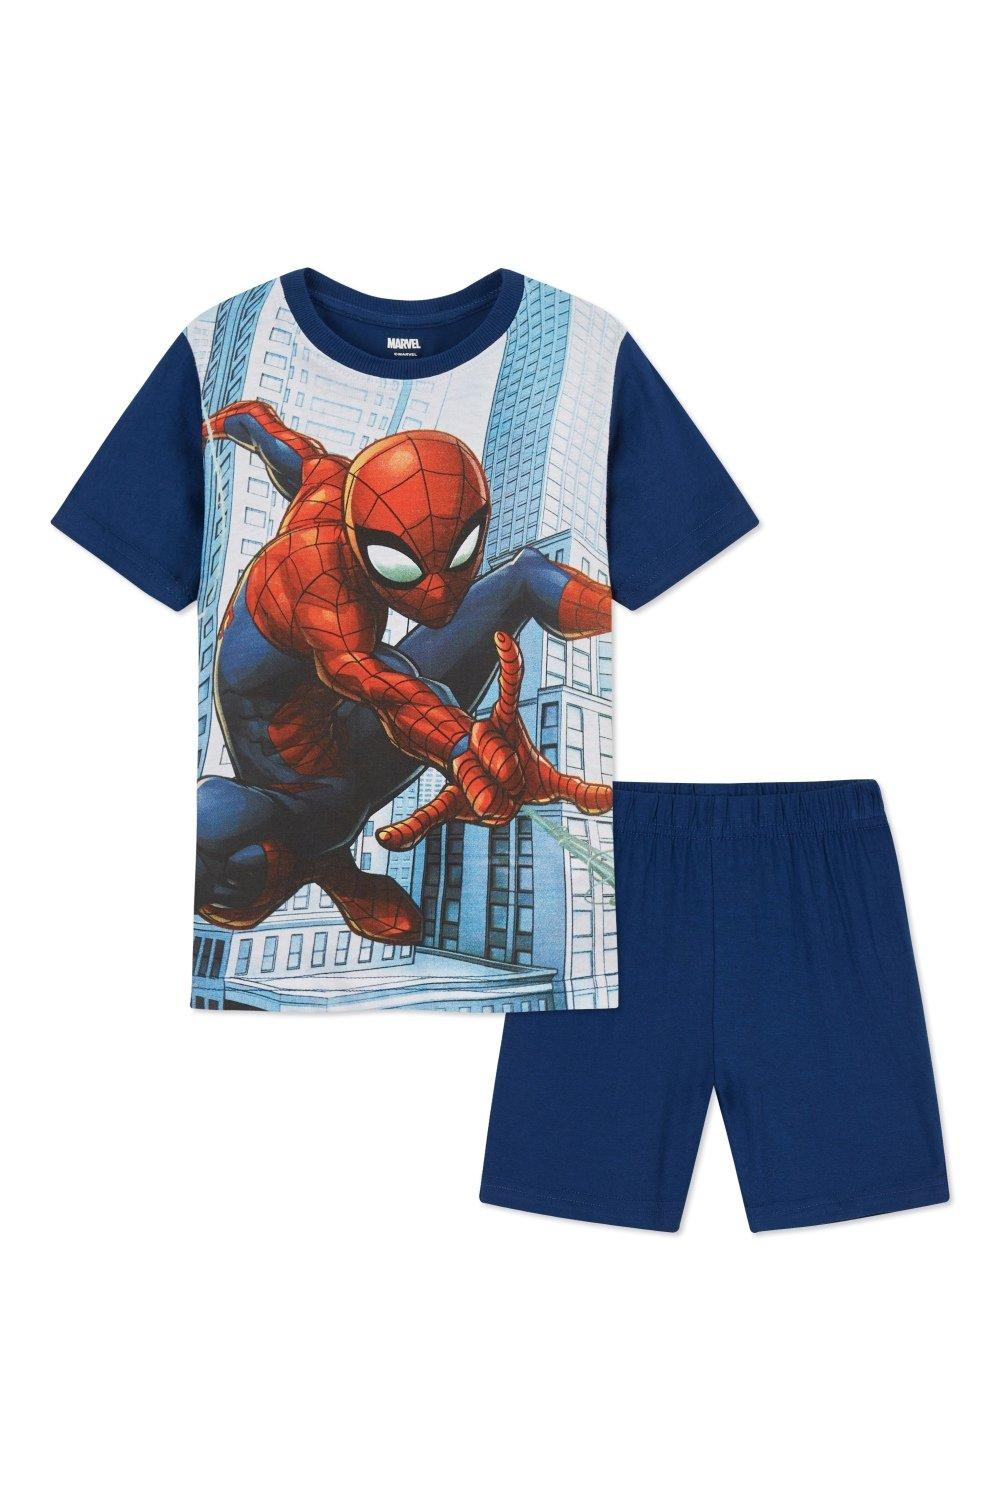 Короткий пижамный комплект «Человек-паук» Marvel, мультиколор чашка для кормления детей холодное сердце из мультфильма marvel человек паук мстители